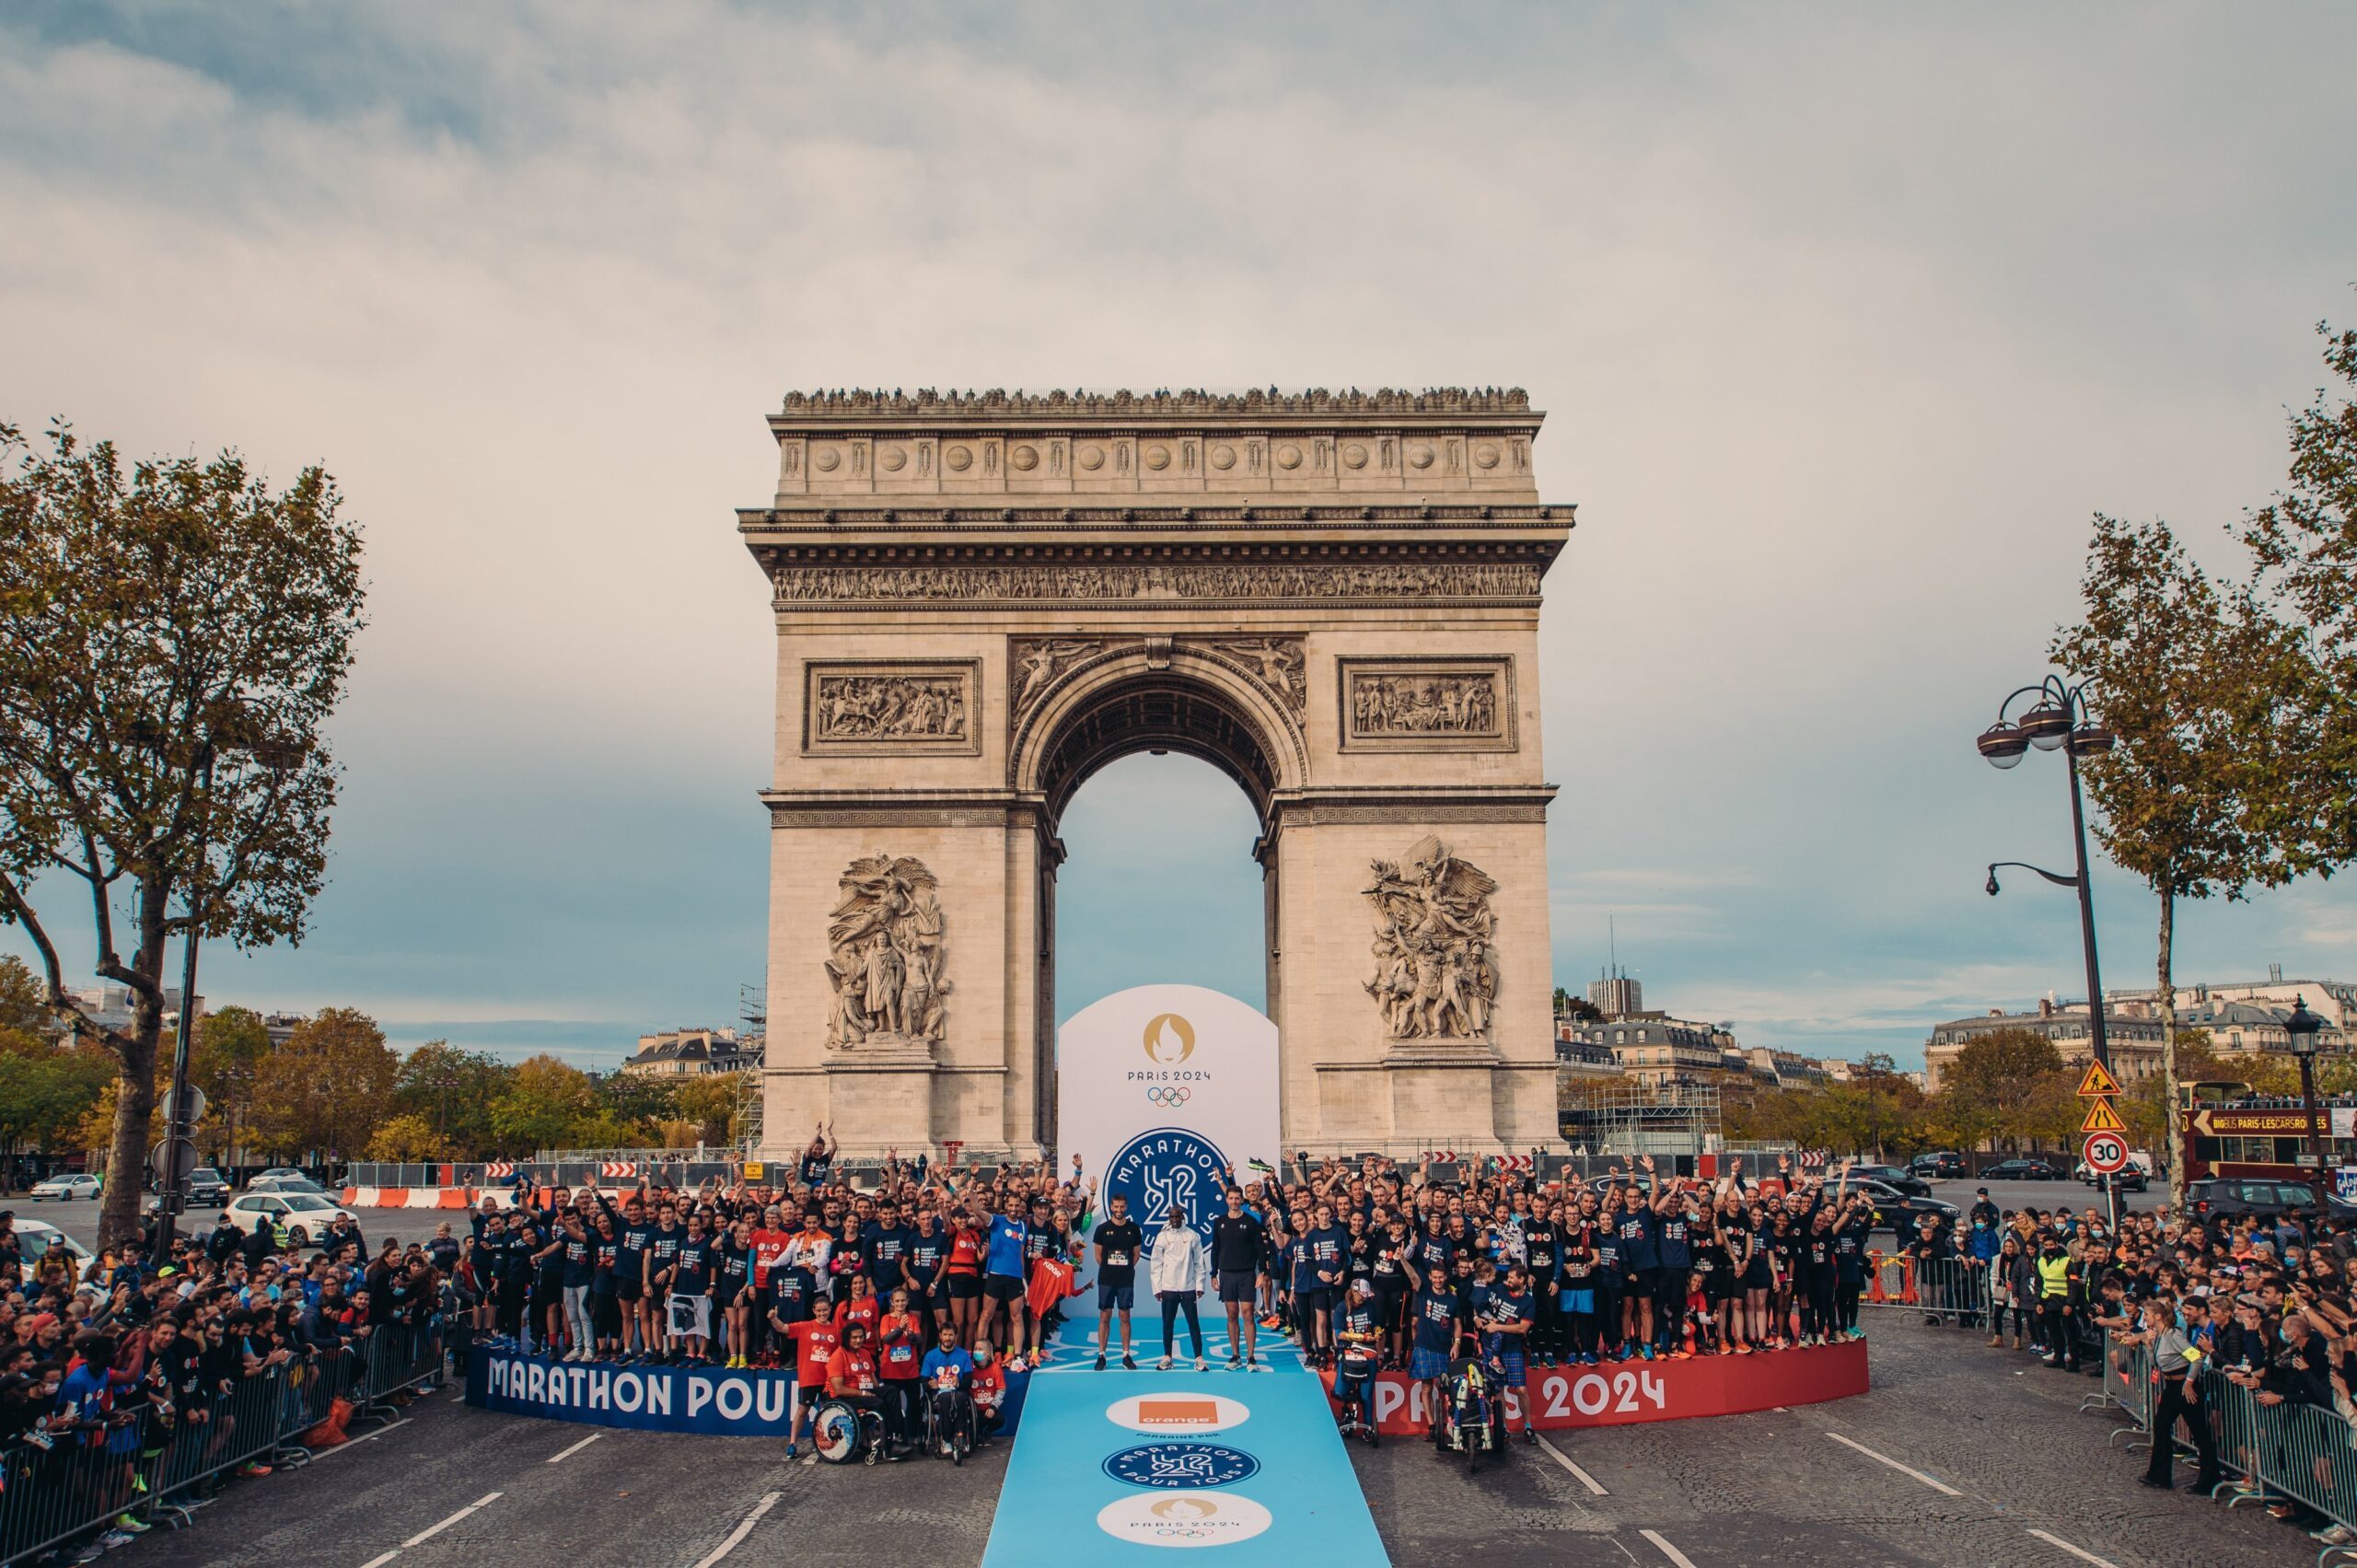 Le Marathon Pour Tous Paris 2024